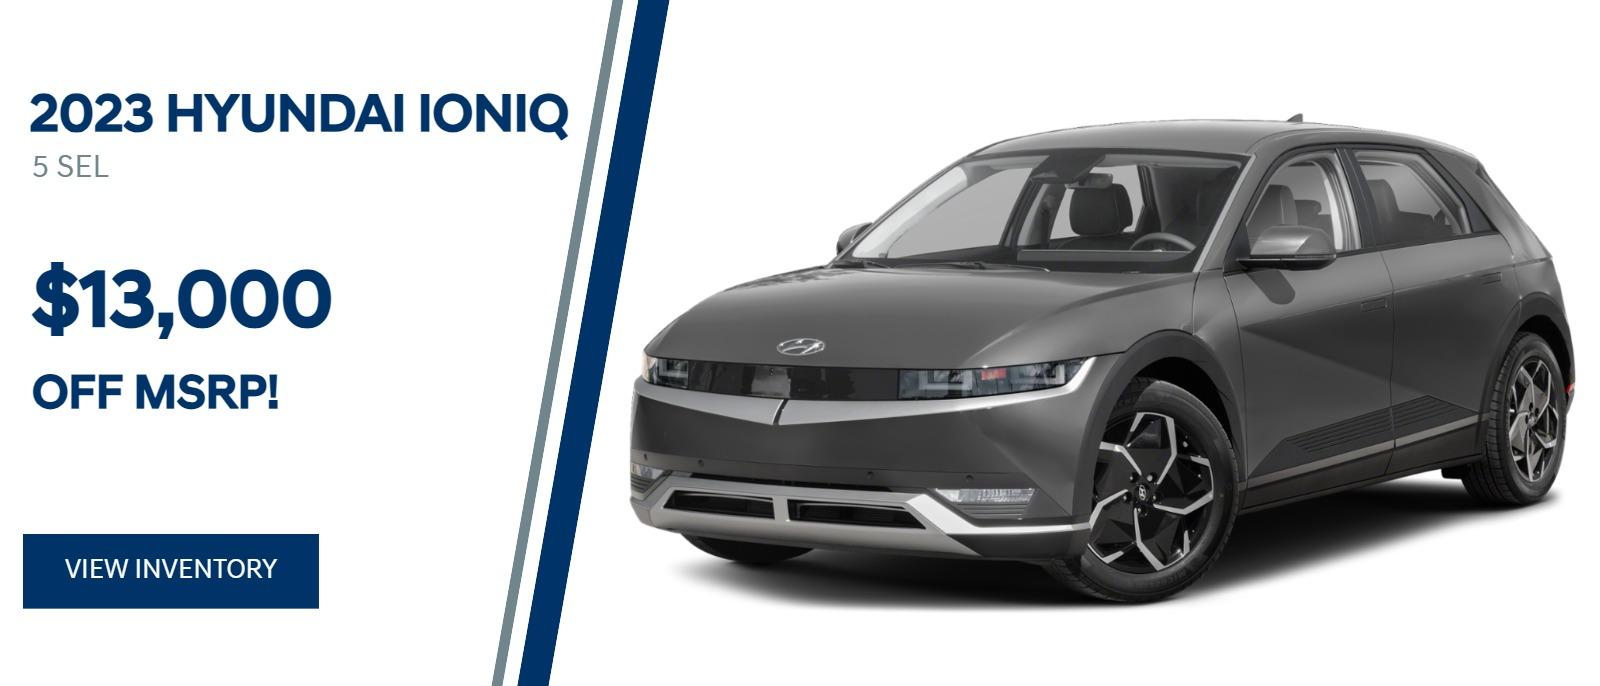 2023 Hyundai Ioniq 5 SEL
$13,000 OFF MSRP!